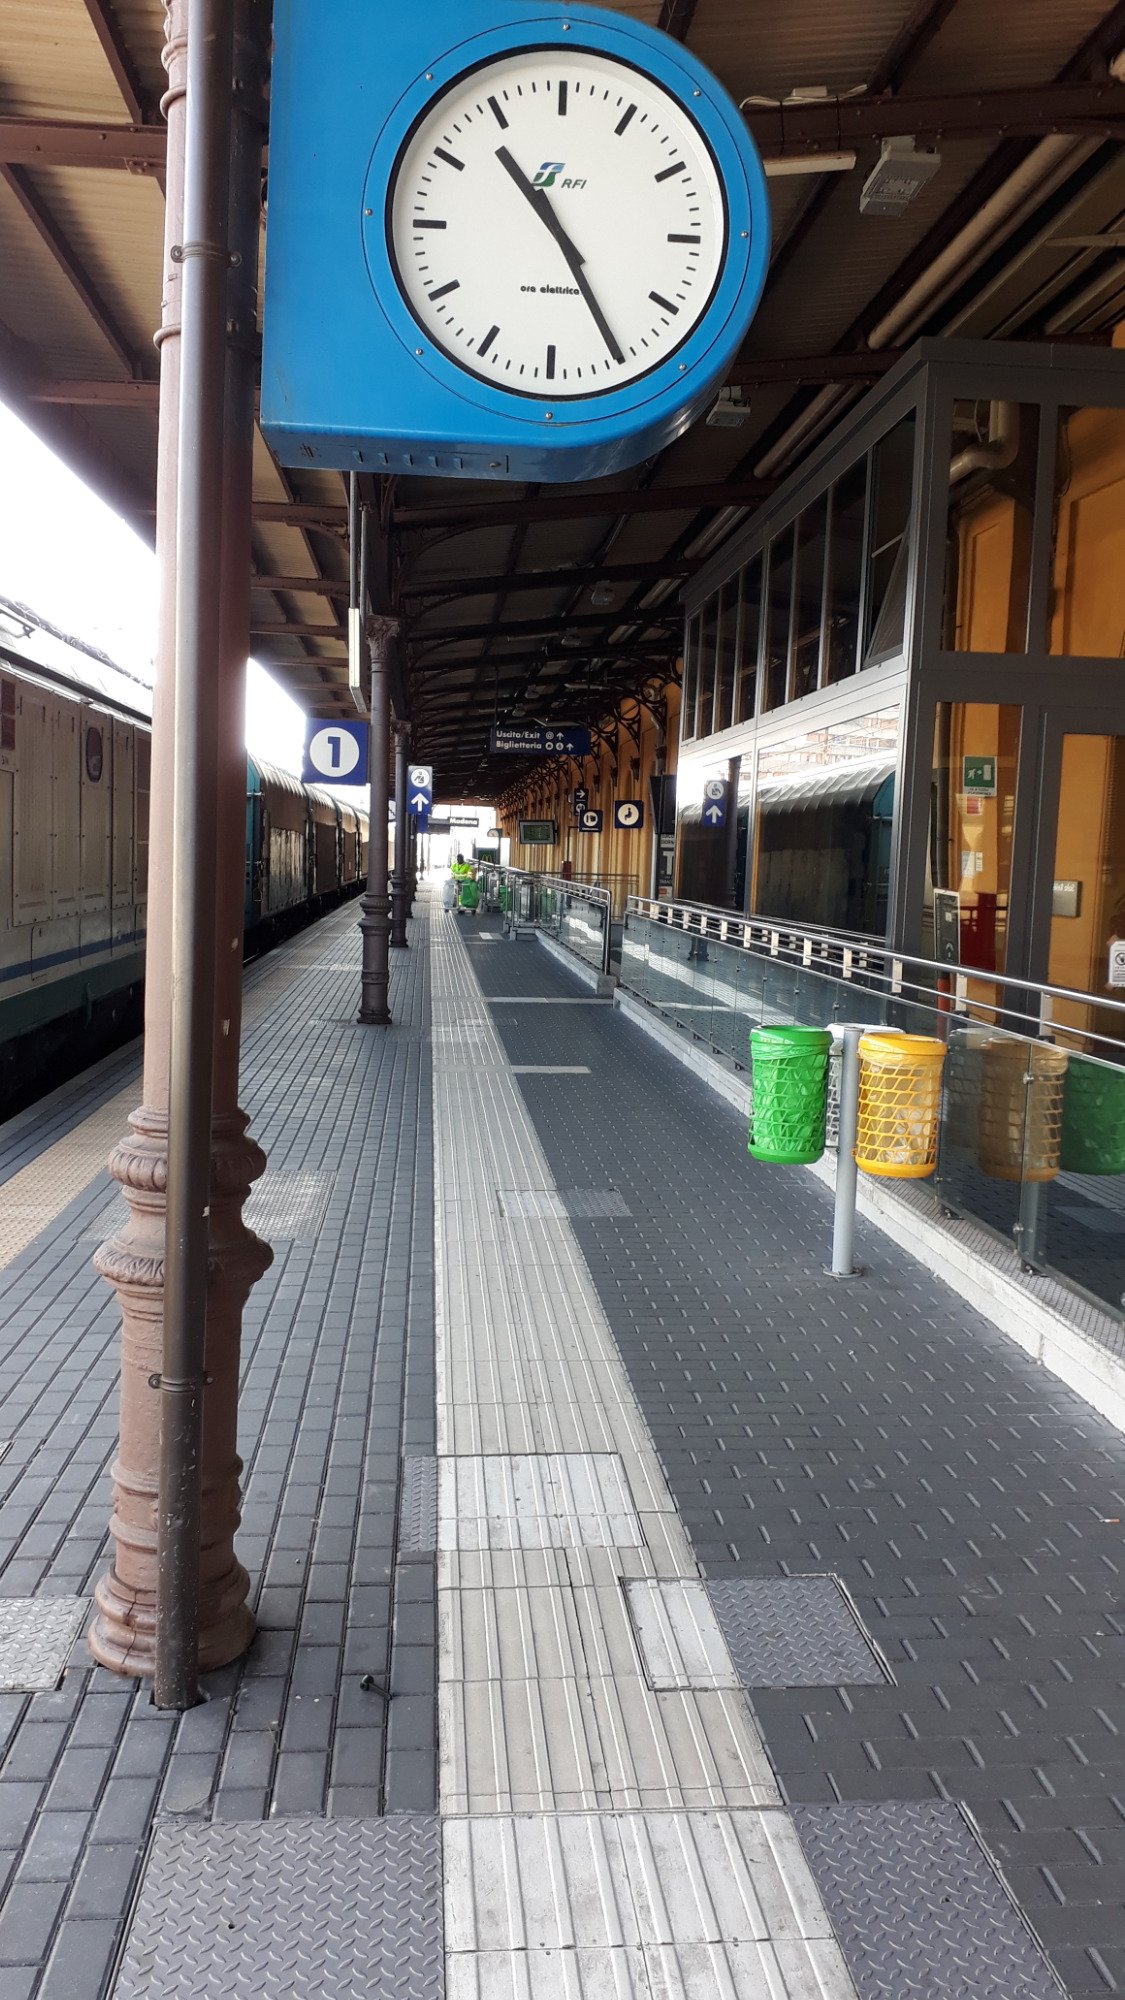 Stazione di Modena